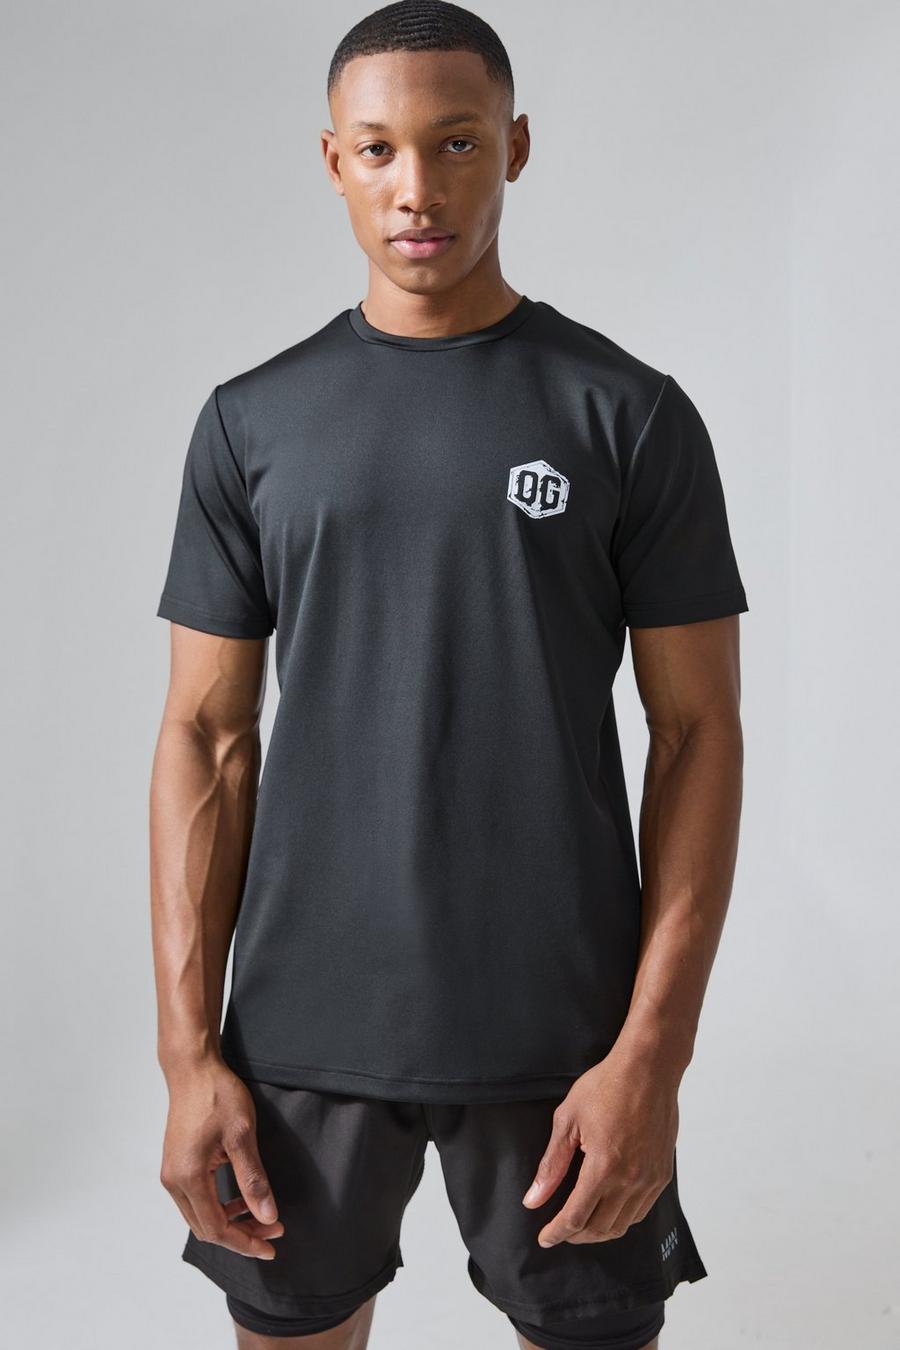 Man Active X Og Gym Slim-Fit Performance T-Shirt, Black image number 1